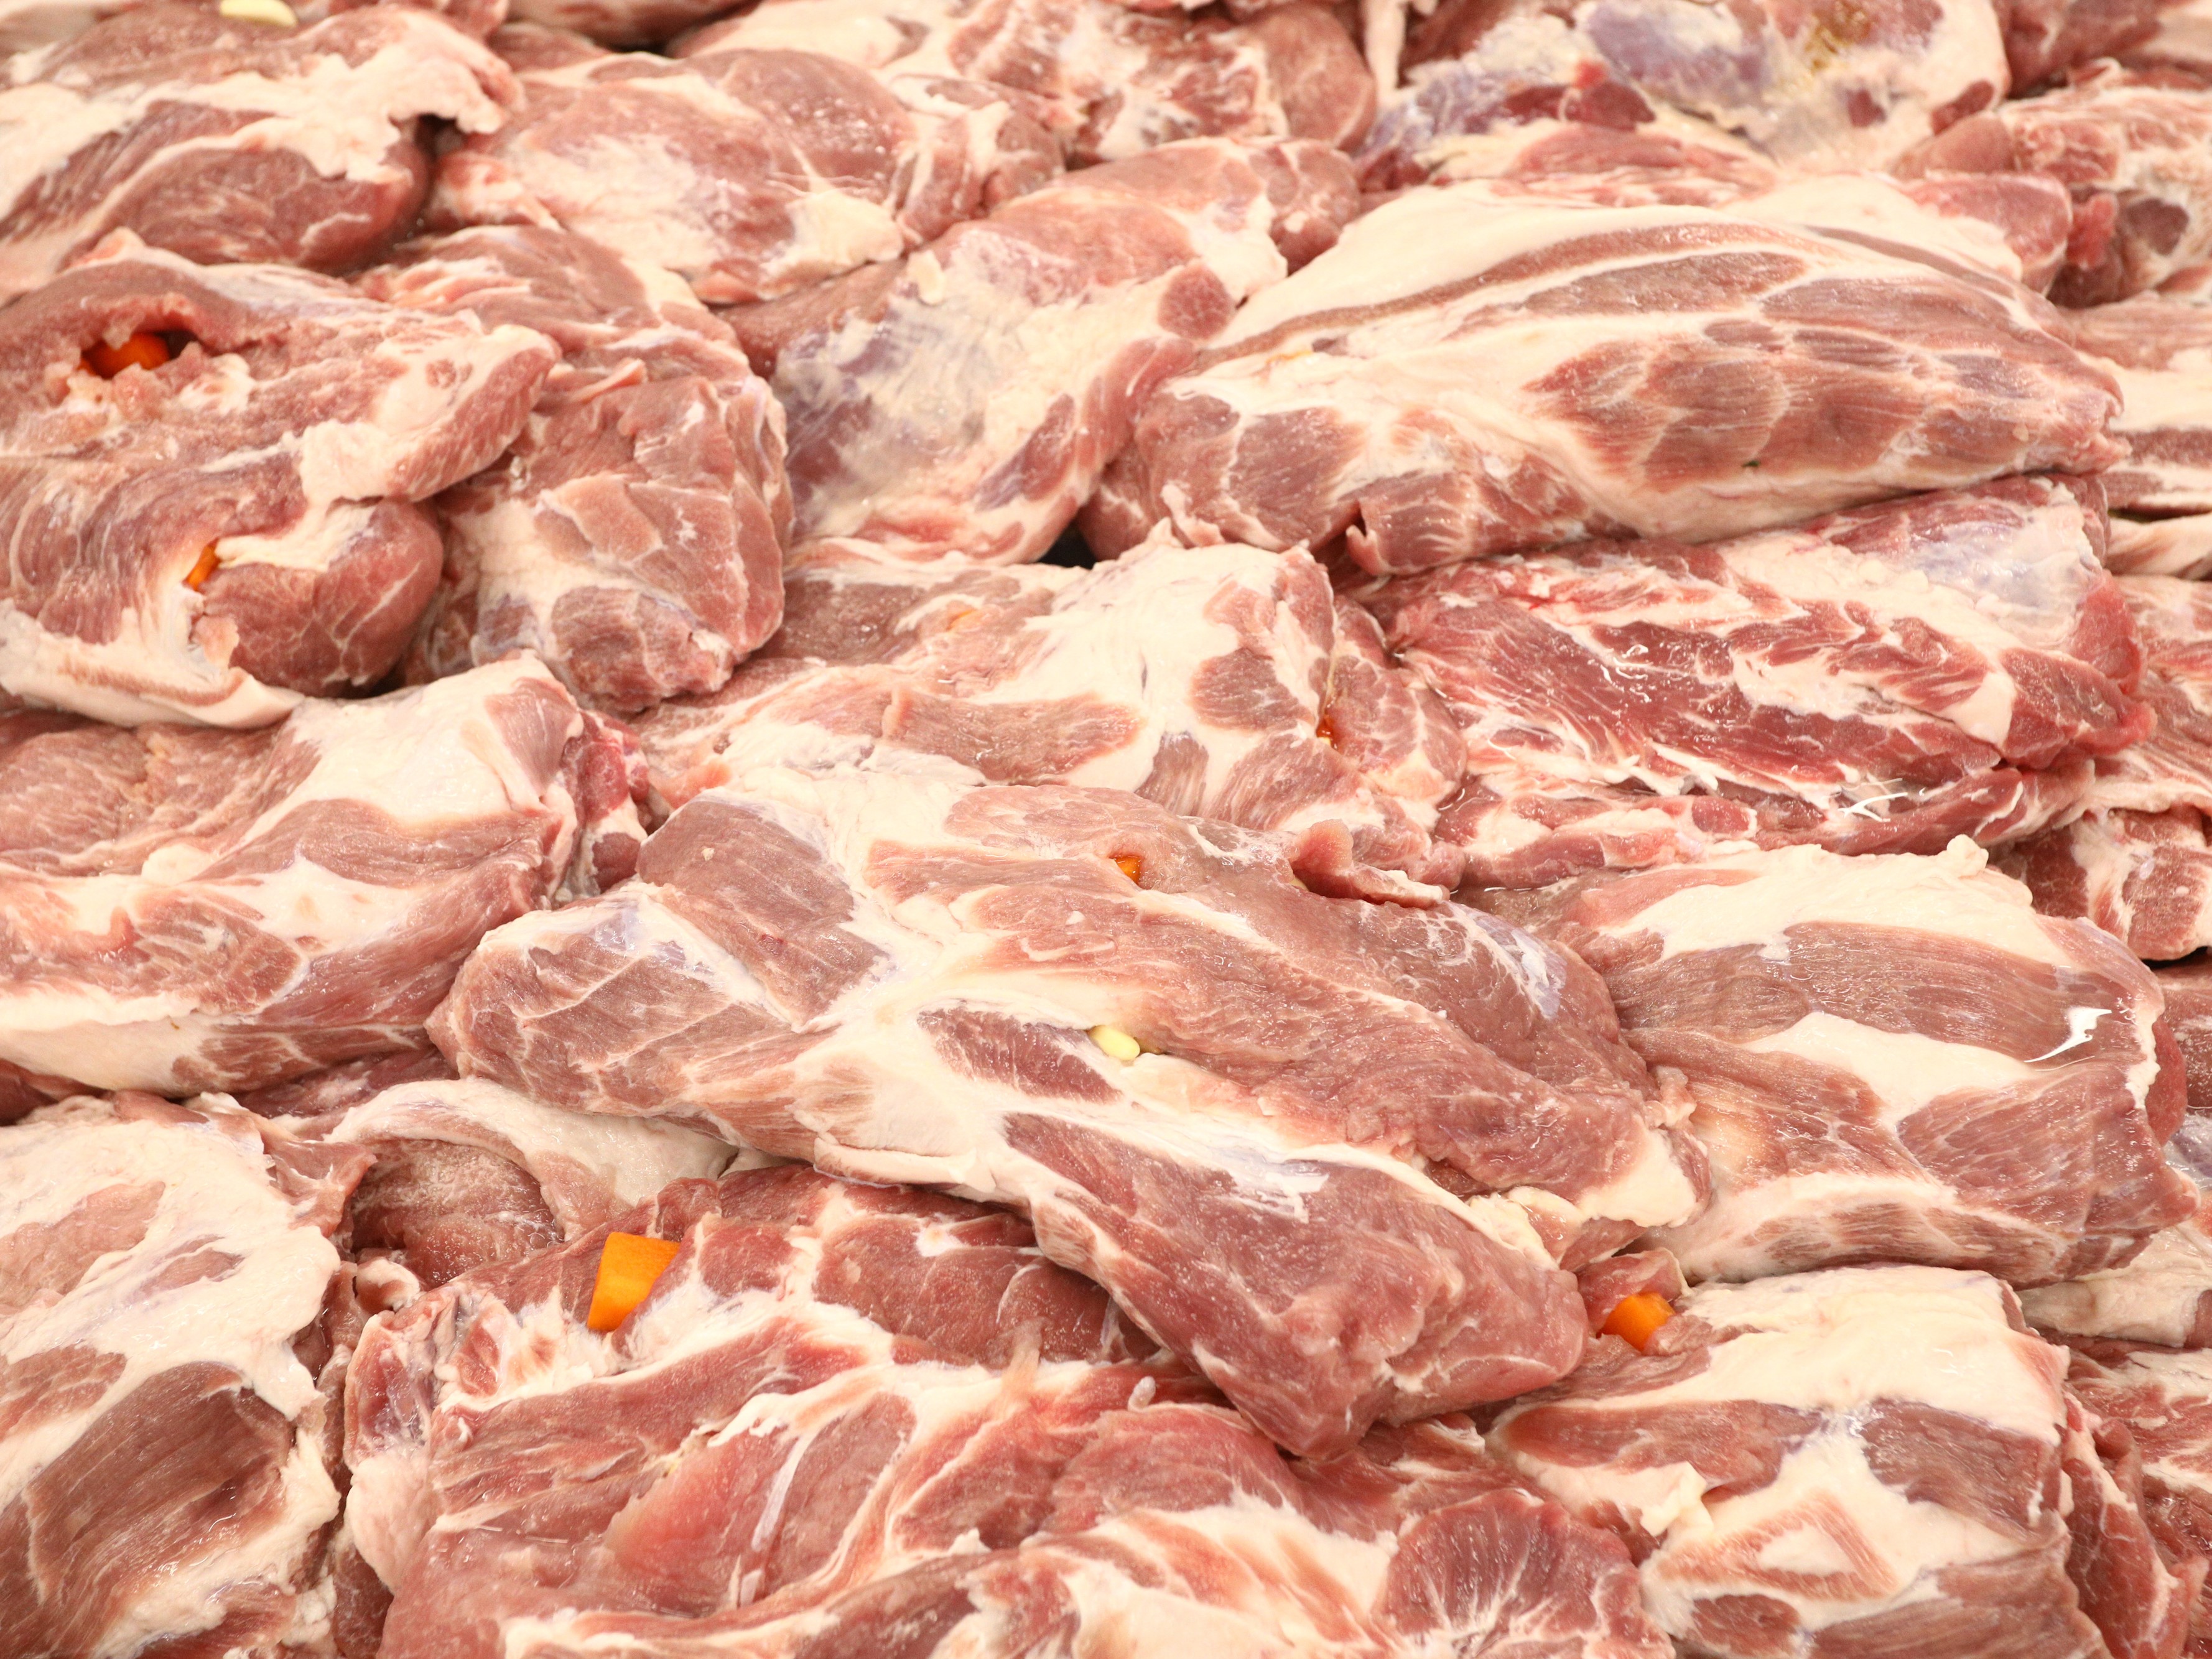 Производство мяса в России росло в среднем на 3,5% в год последние десять лет